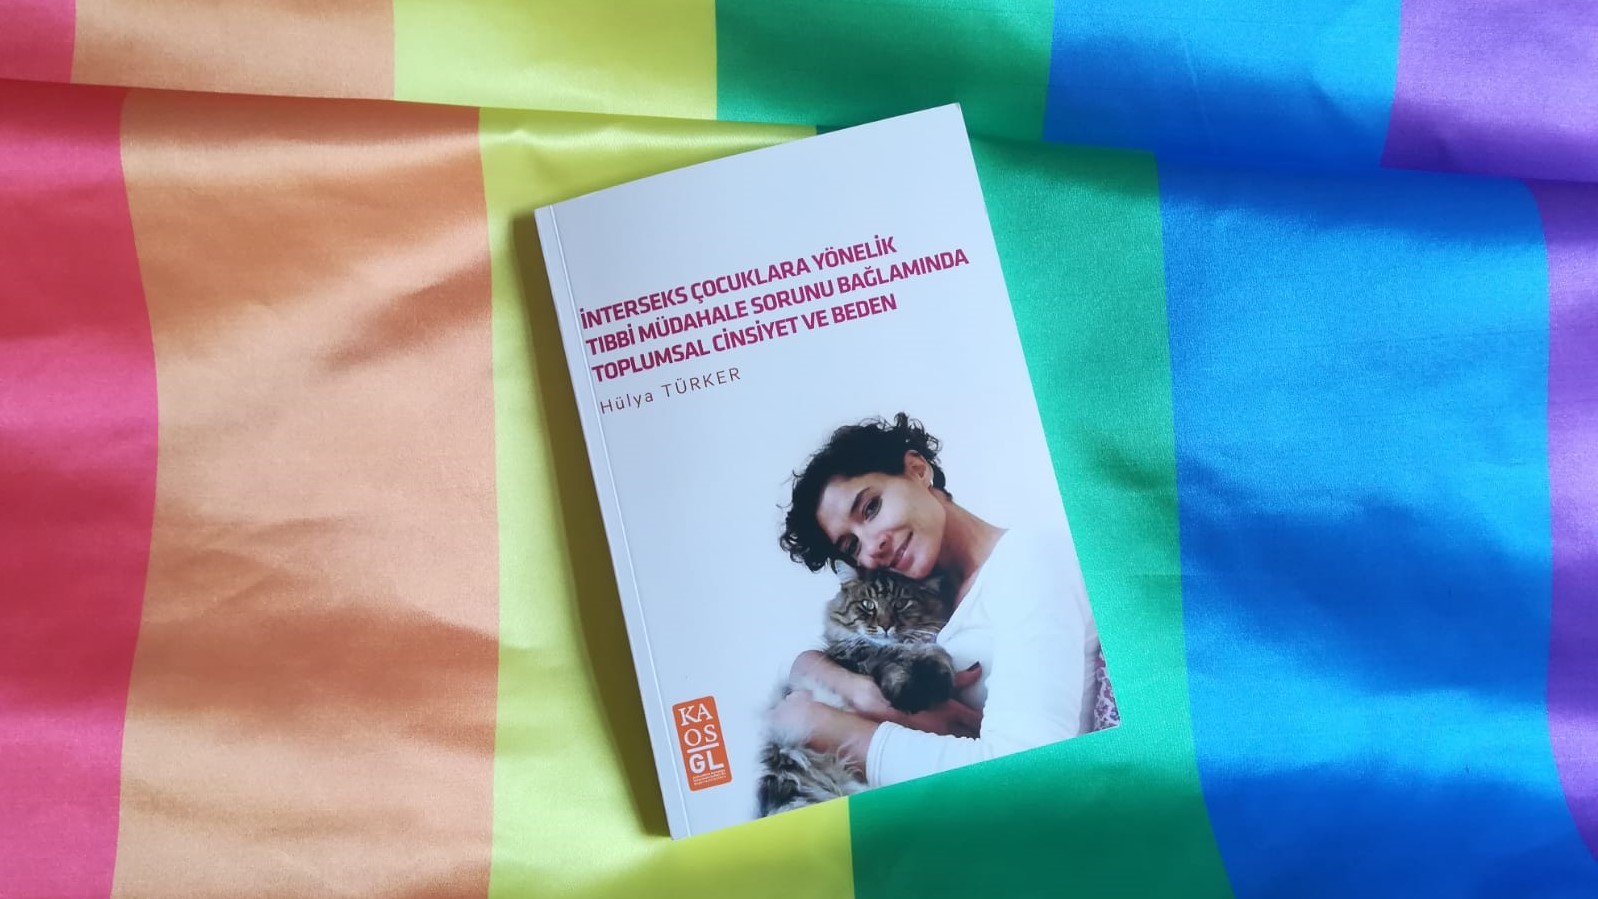 Hülya Türker’in kitabı yayımda | Kaos GL - LGBTİ+ Haber Portalı Haber